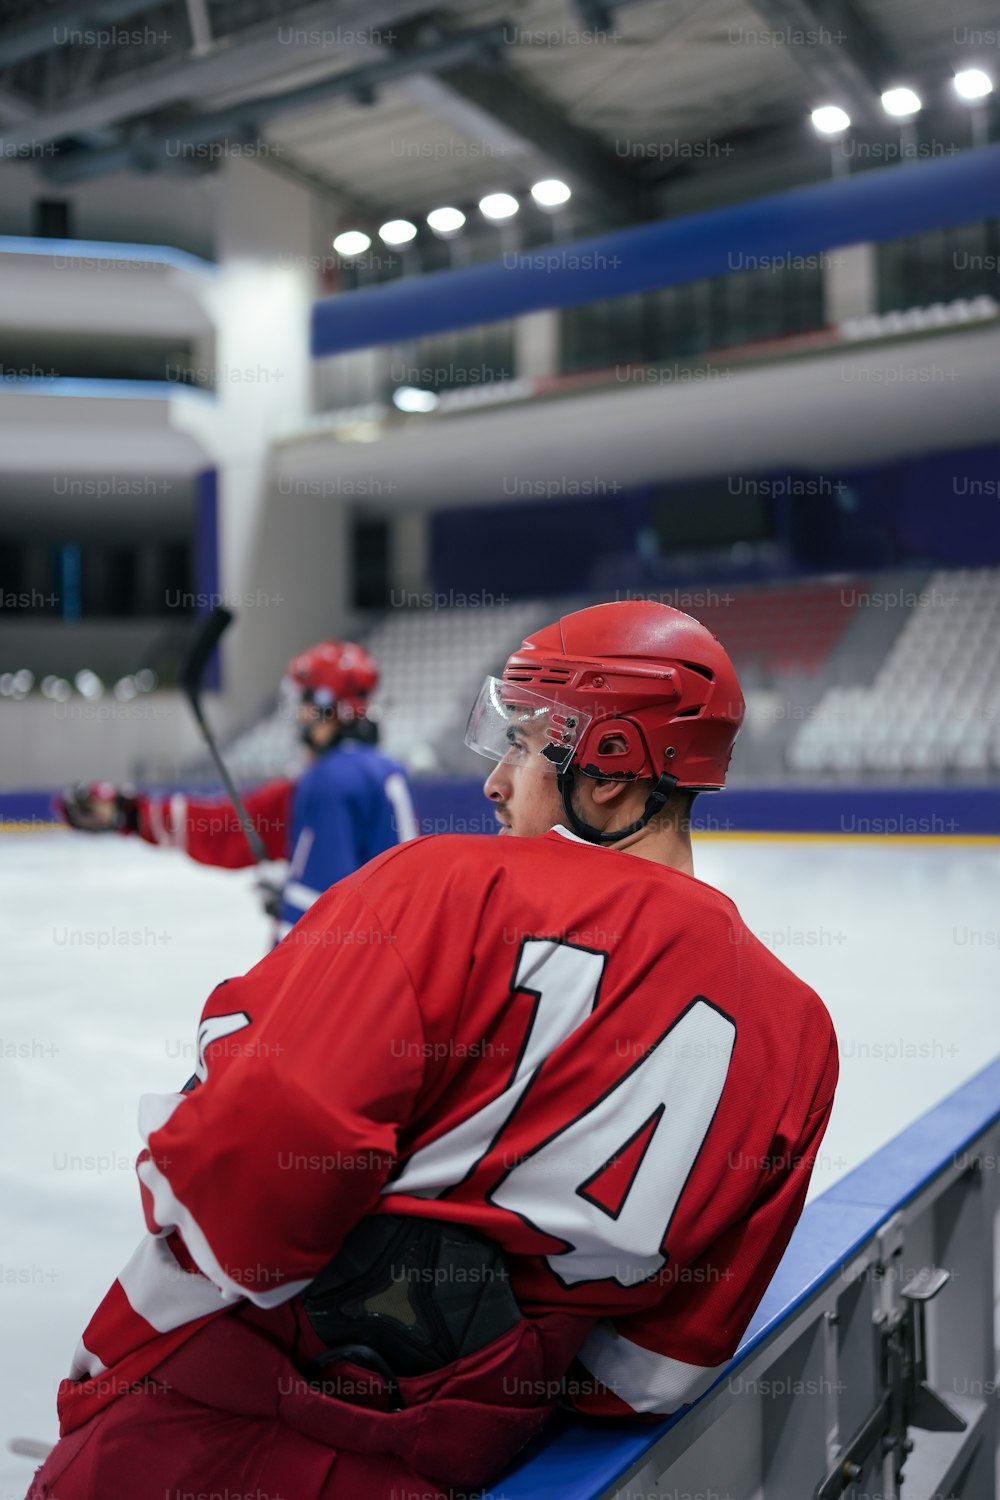 Un uomo seduto su una panchina che indossa un'uniforme da hockey rossa